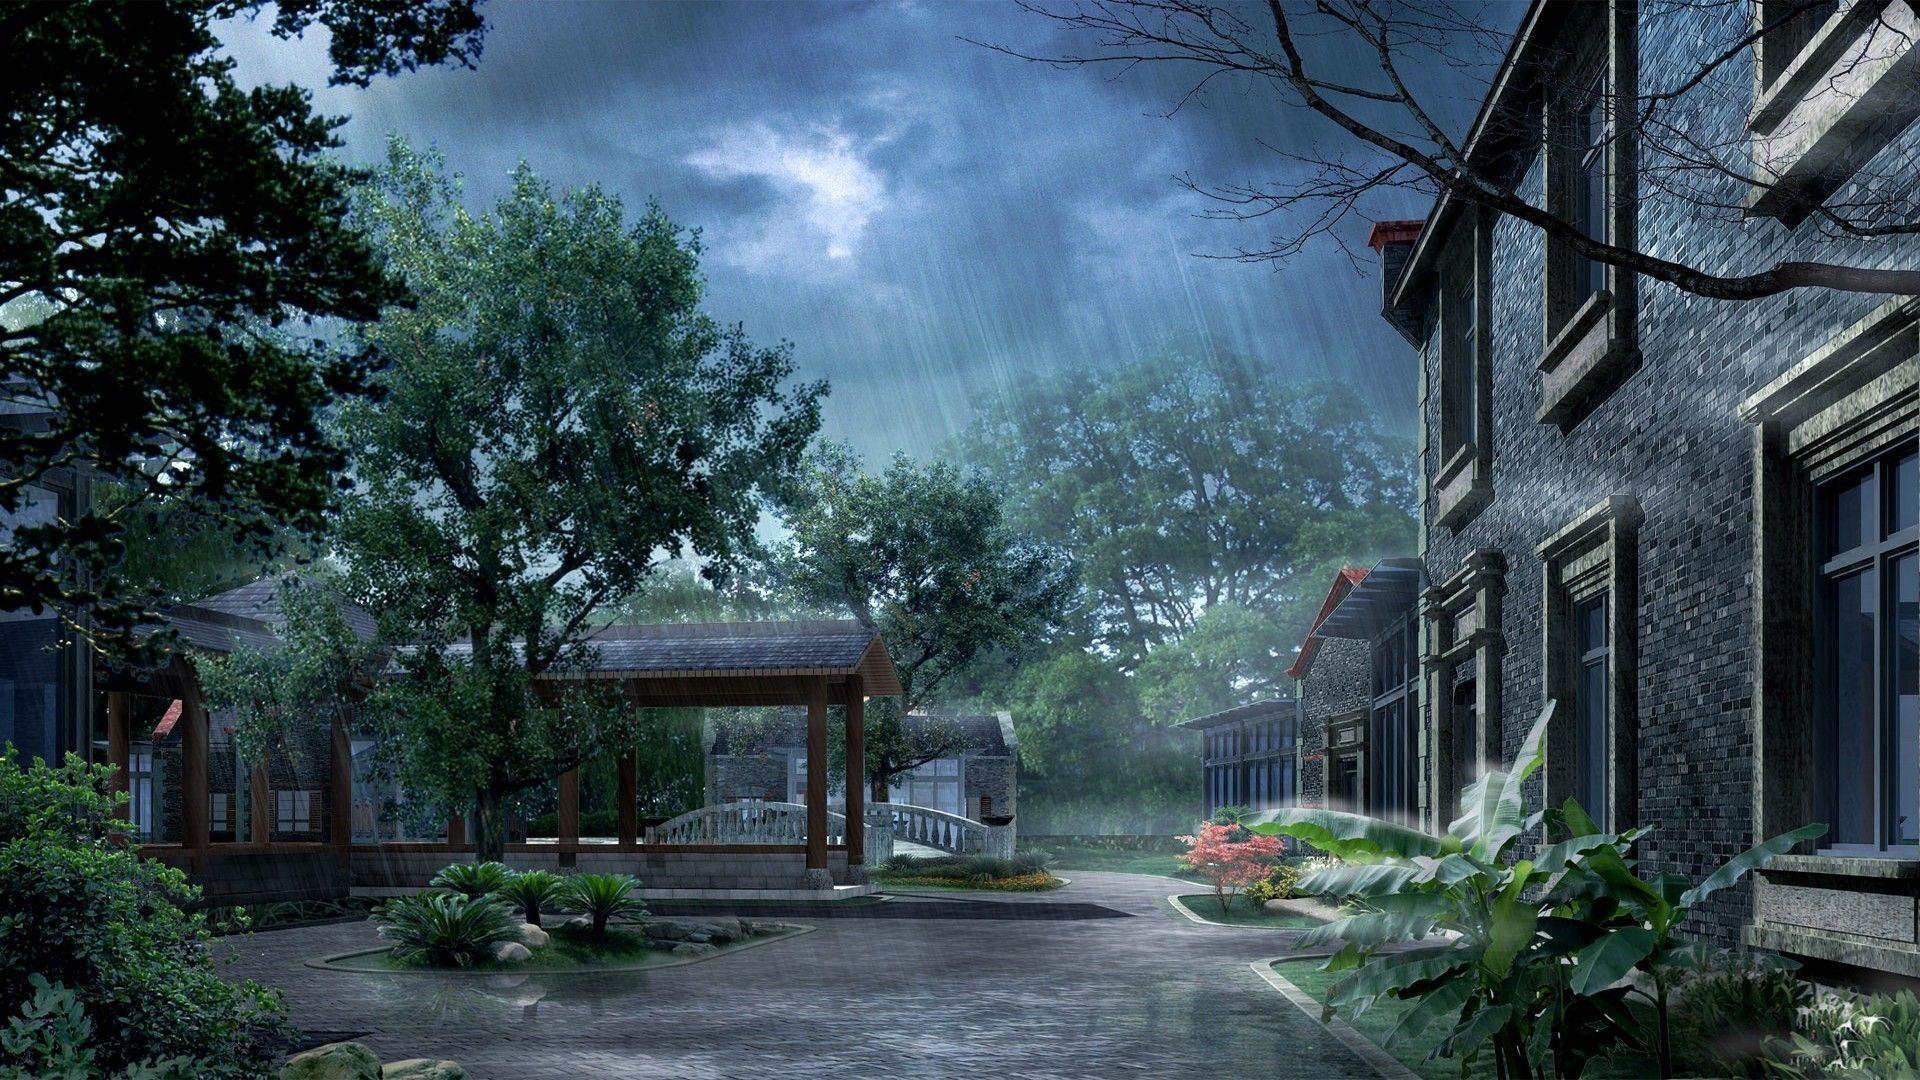 Monsoon Wallpaper. Free Download HD Beautiful Amazing Rainy Image